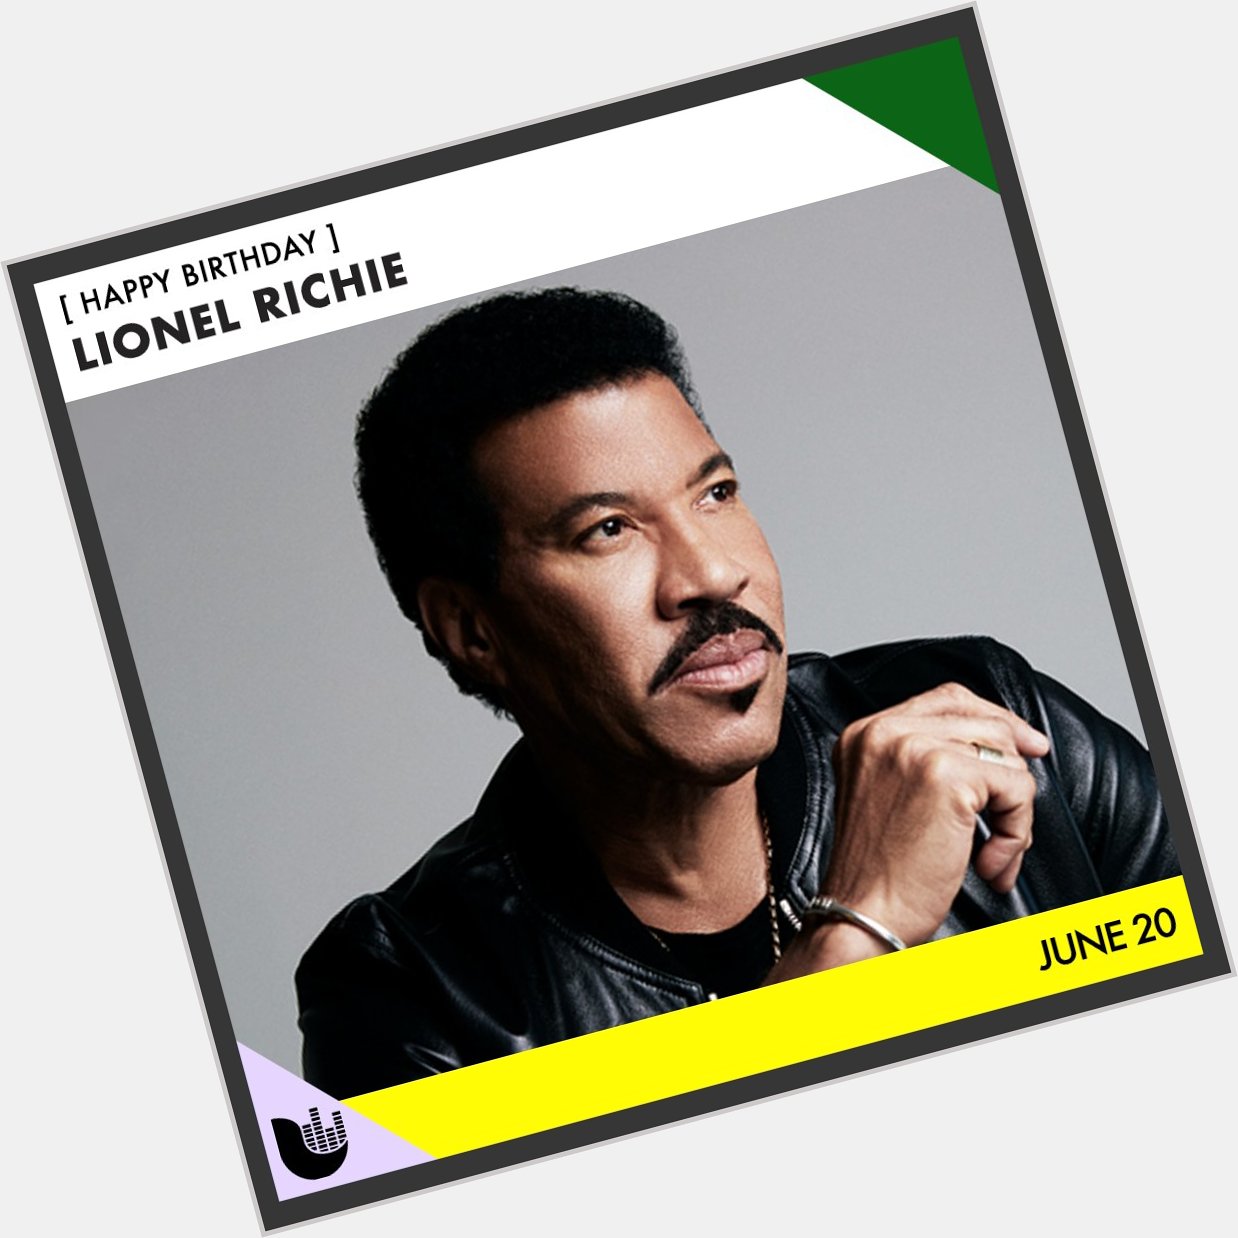 Happy birthday Lionel Richie! 